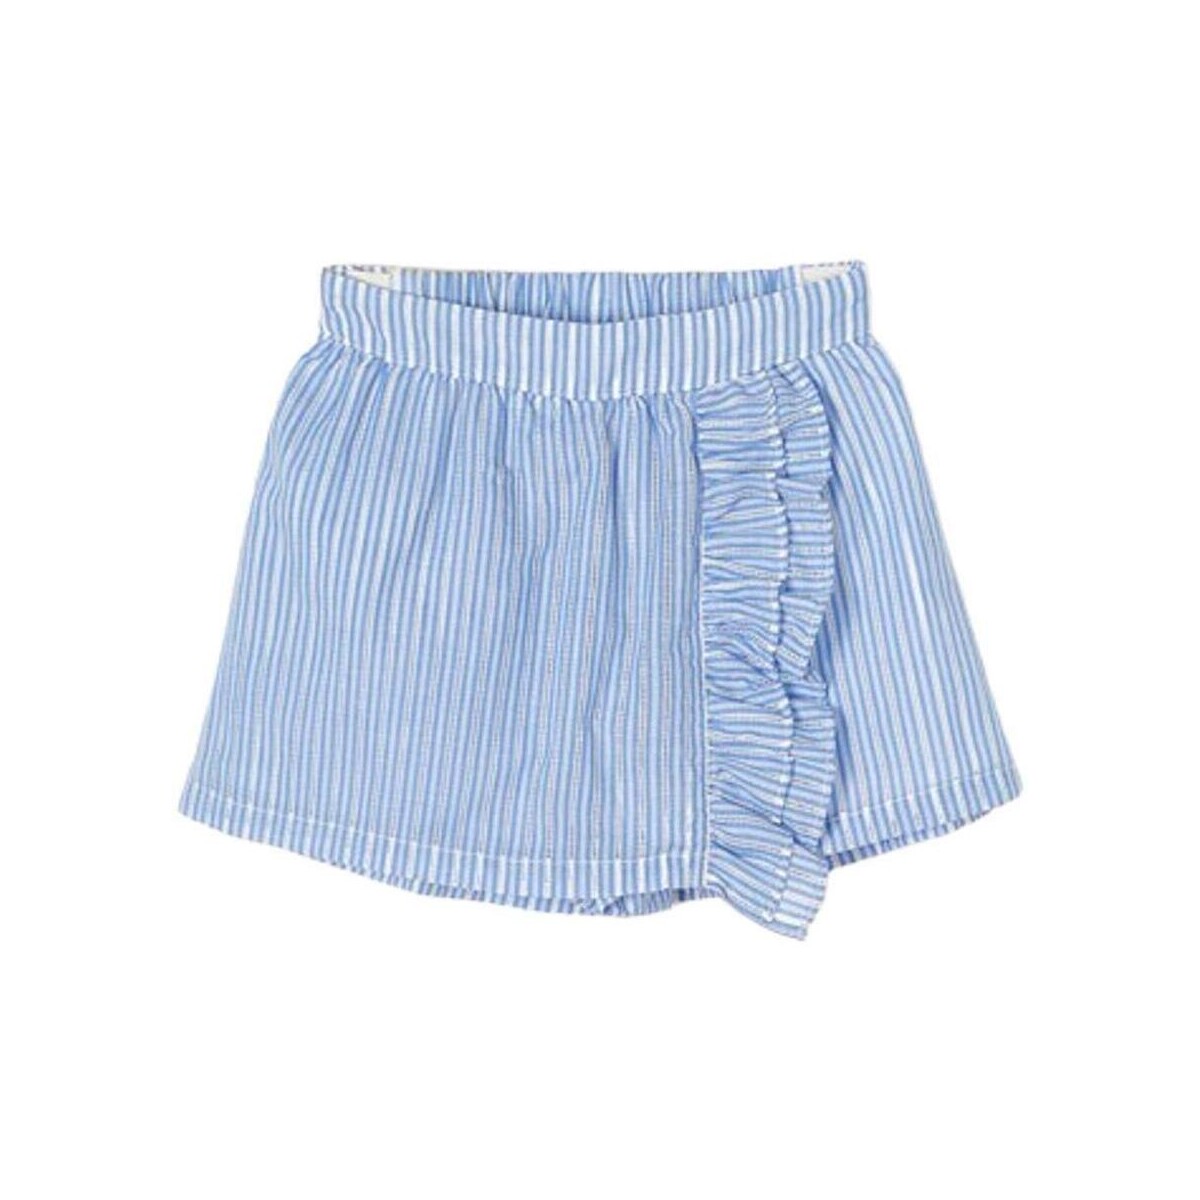 Textiel Meisjes Korte broeken / Bermuda's Mayoral  Blauw